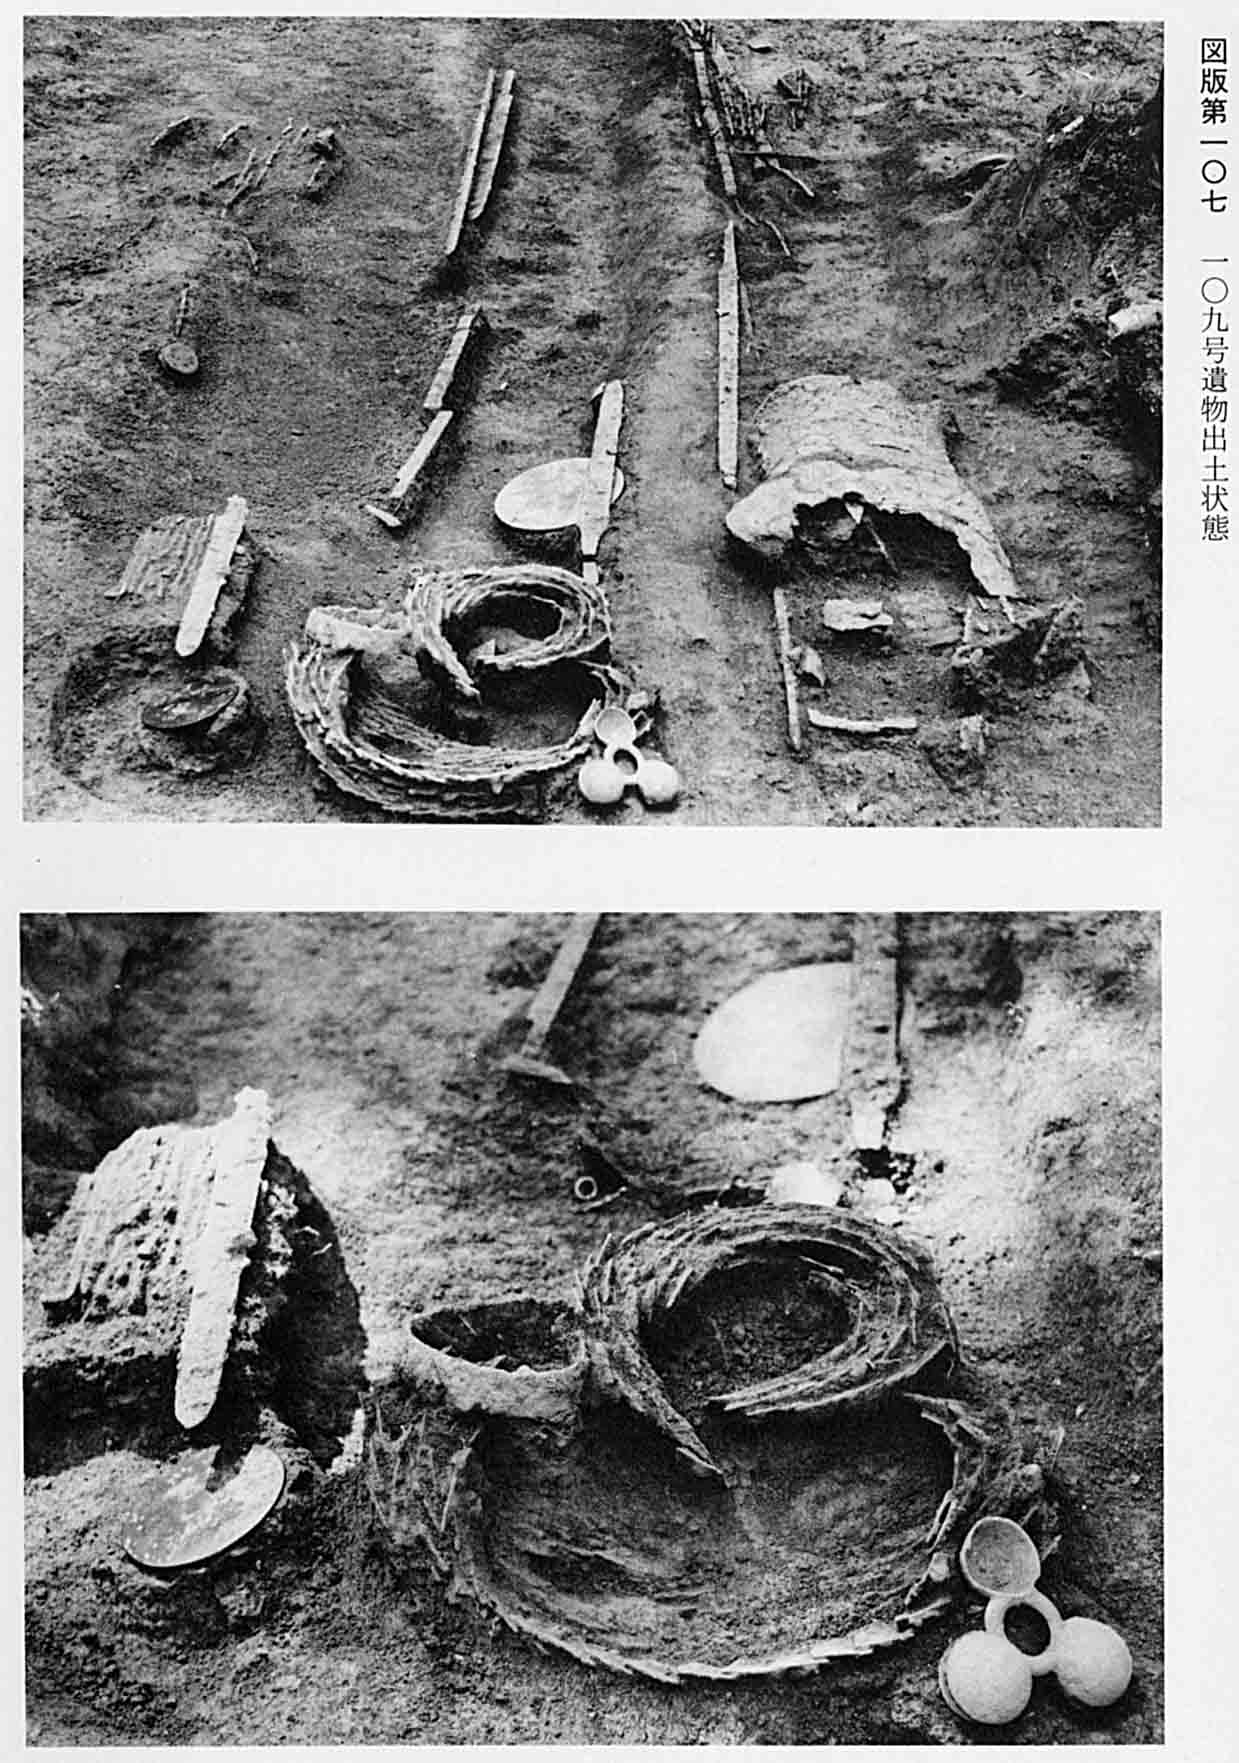 上、剣や鎧が並べられている 下、縄や探検が並べられている、図版107 109号遺物出土状態の2枚のモノクロ写真